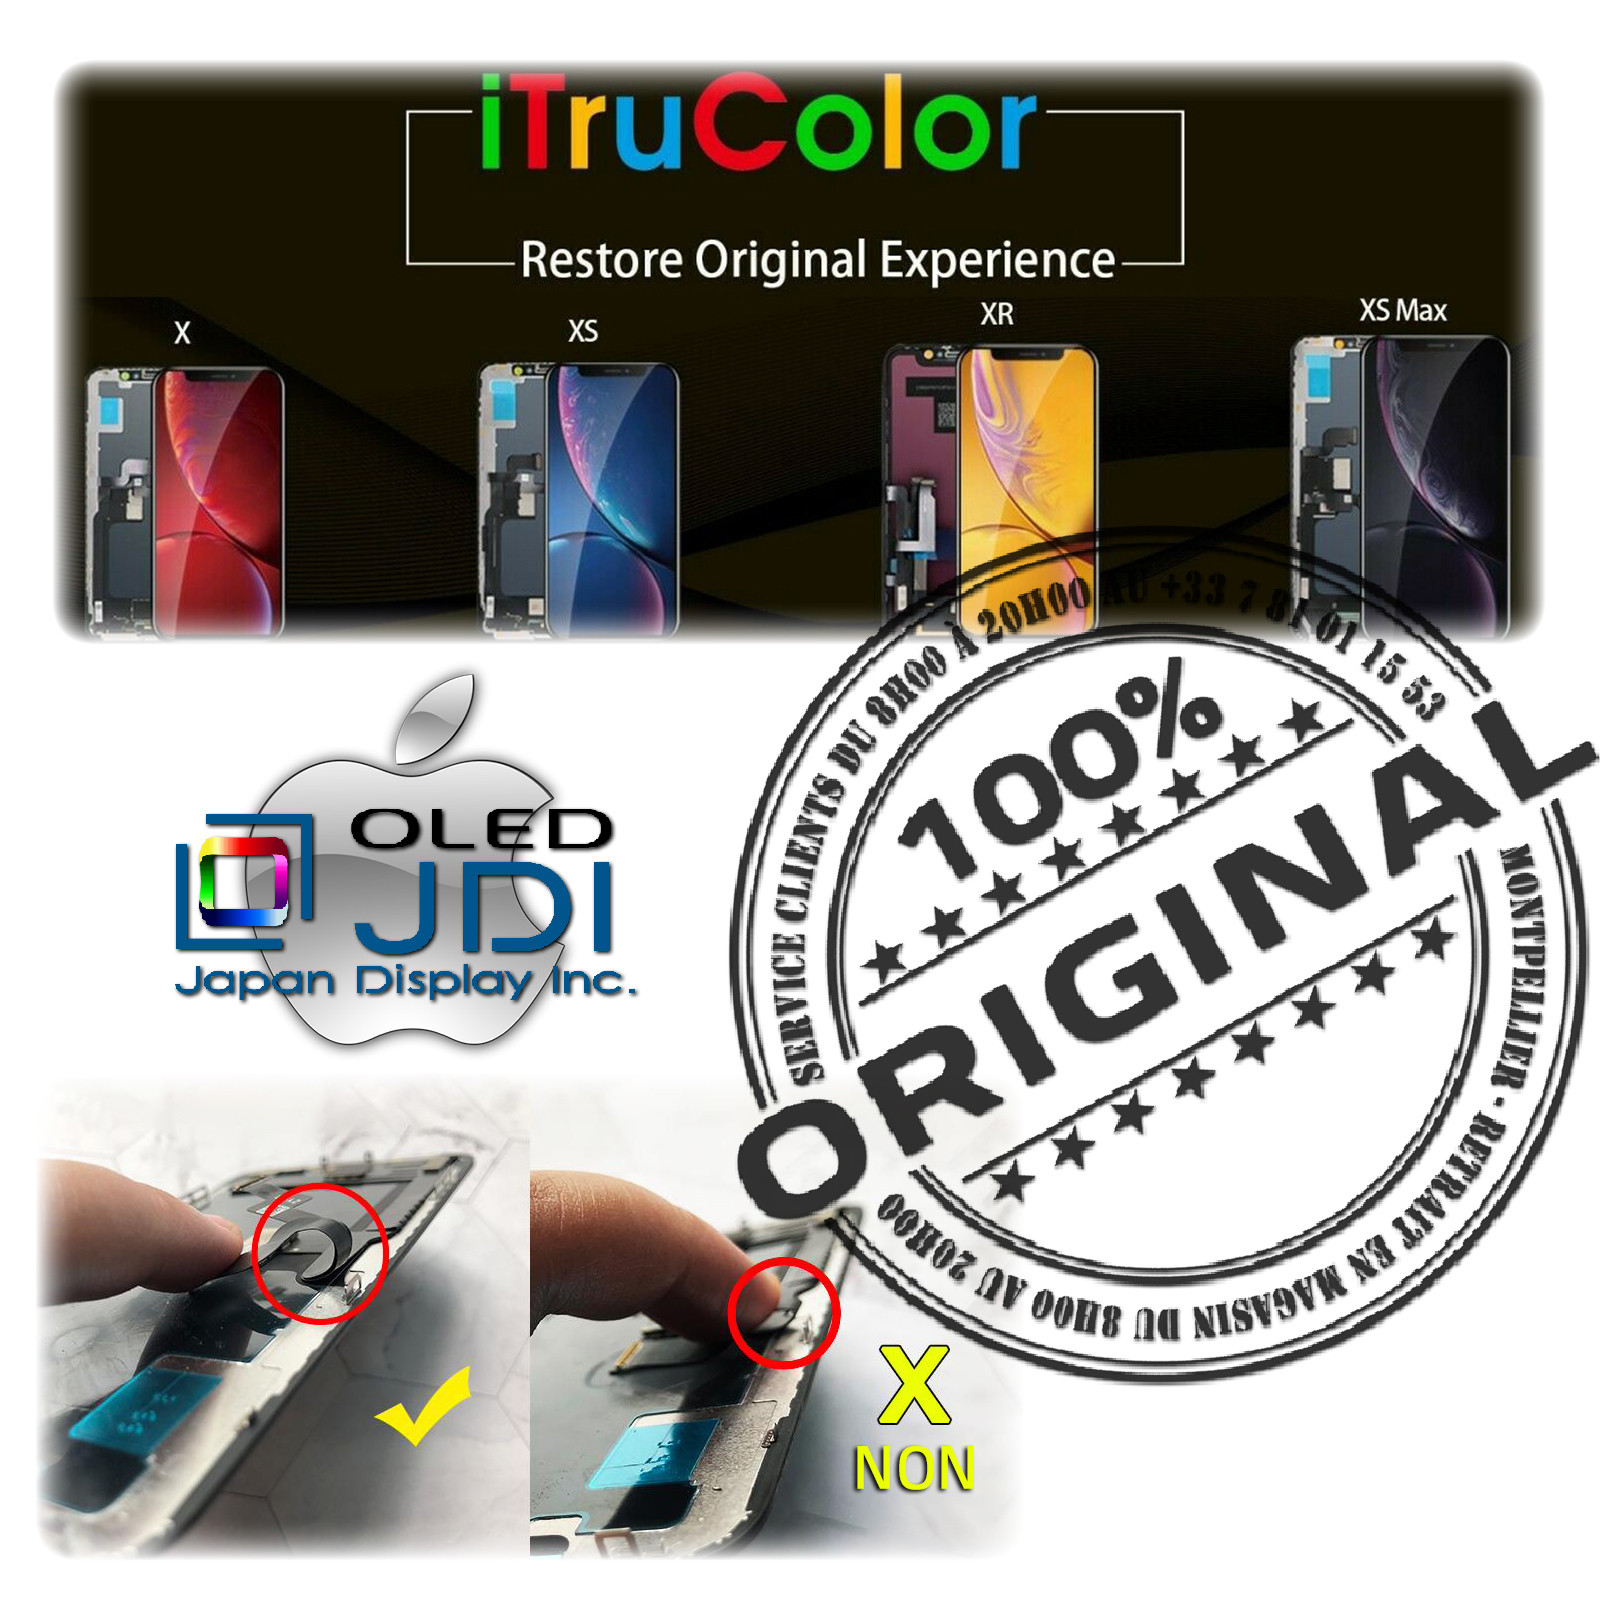 HDR ORIGINAL Verre Tactile soft OLED iPhone XS MAX iTruColor Qualité SmartPhone 3D Touch Réparation Écran HD Super Retina 6.5in